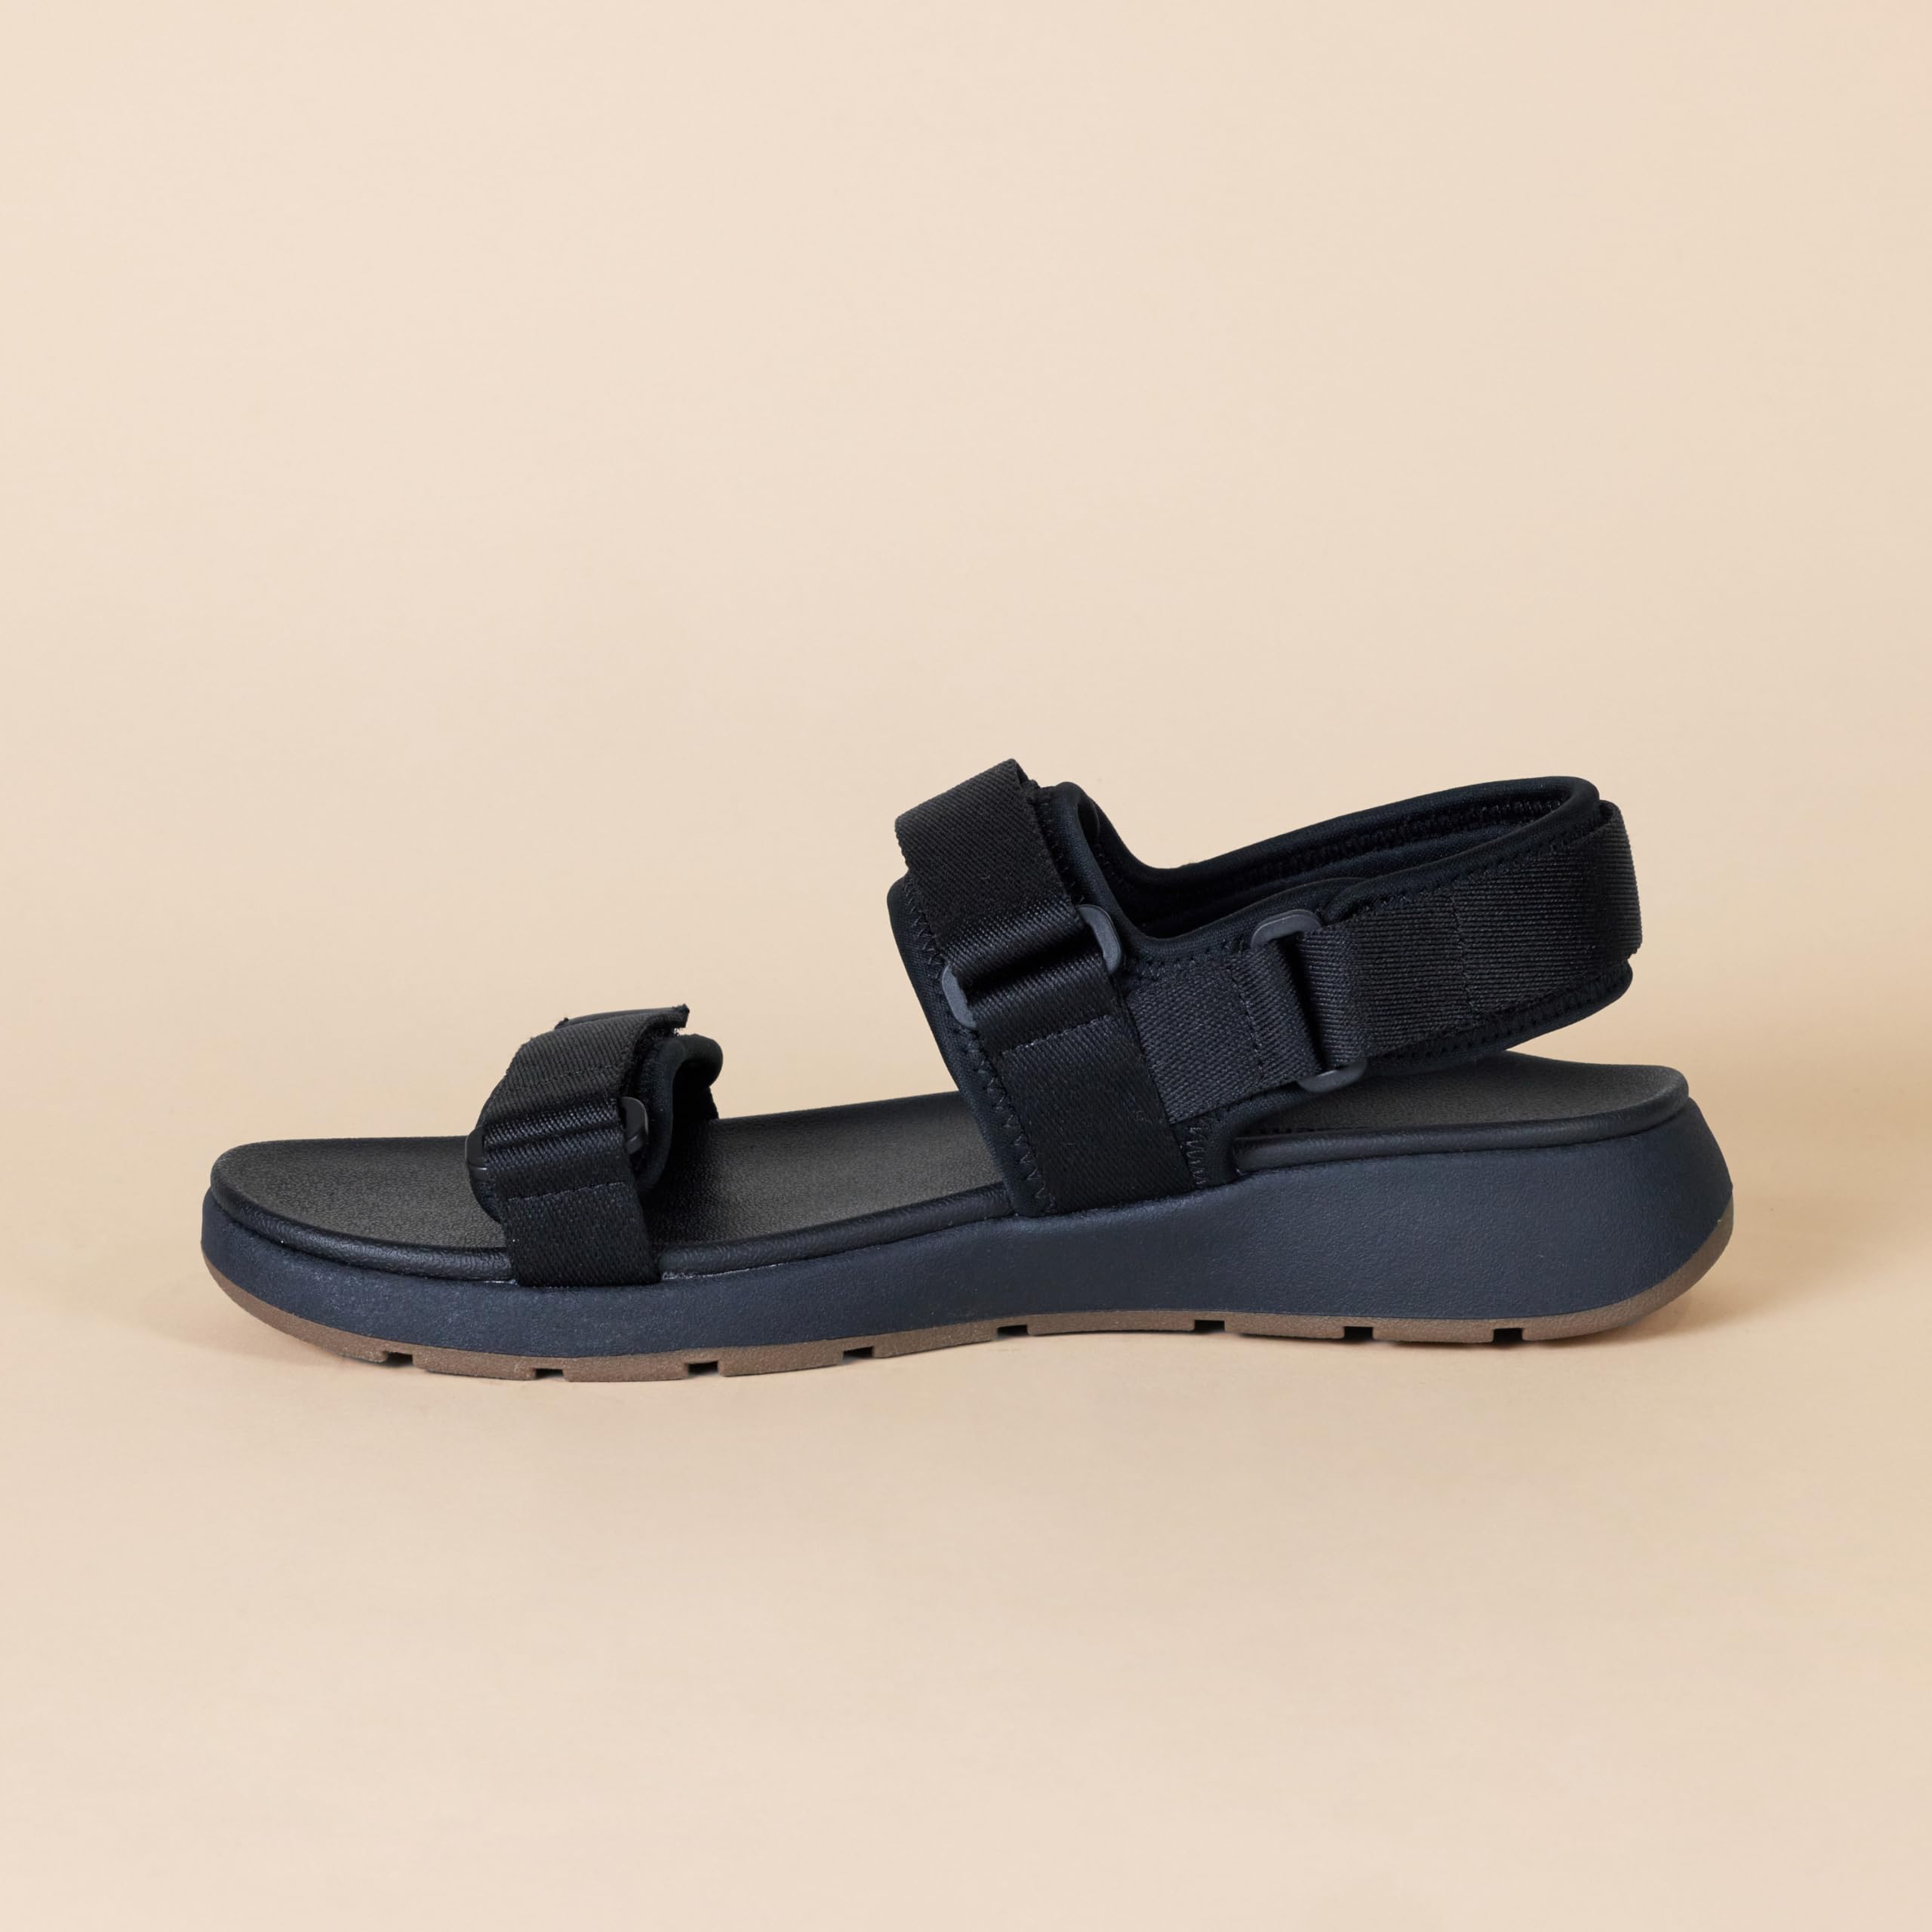 Amazon Essentials Men's Adjustable Triple Strap Sandal